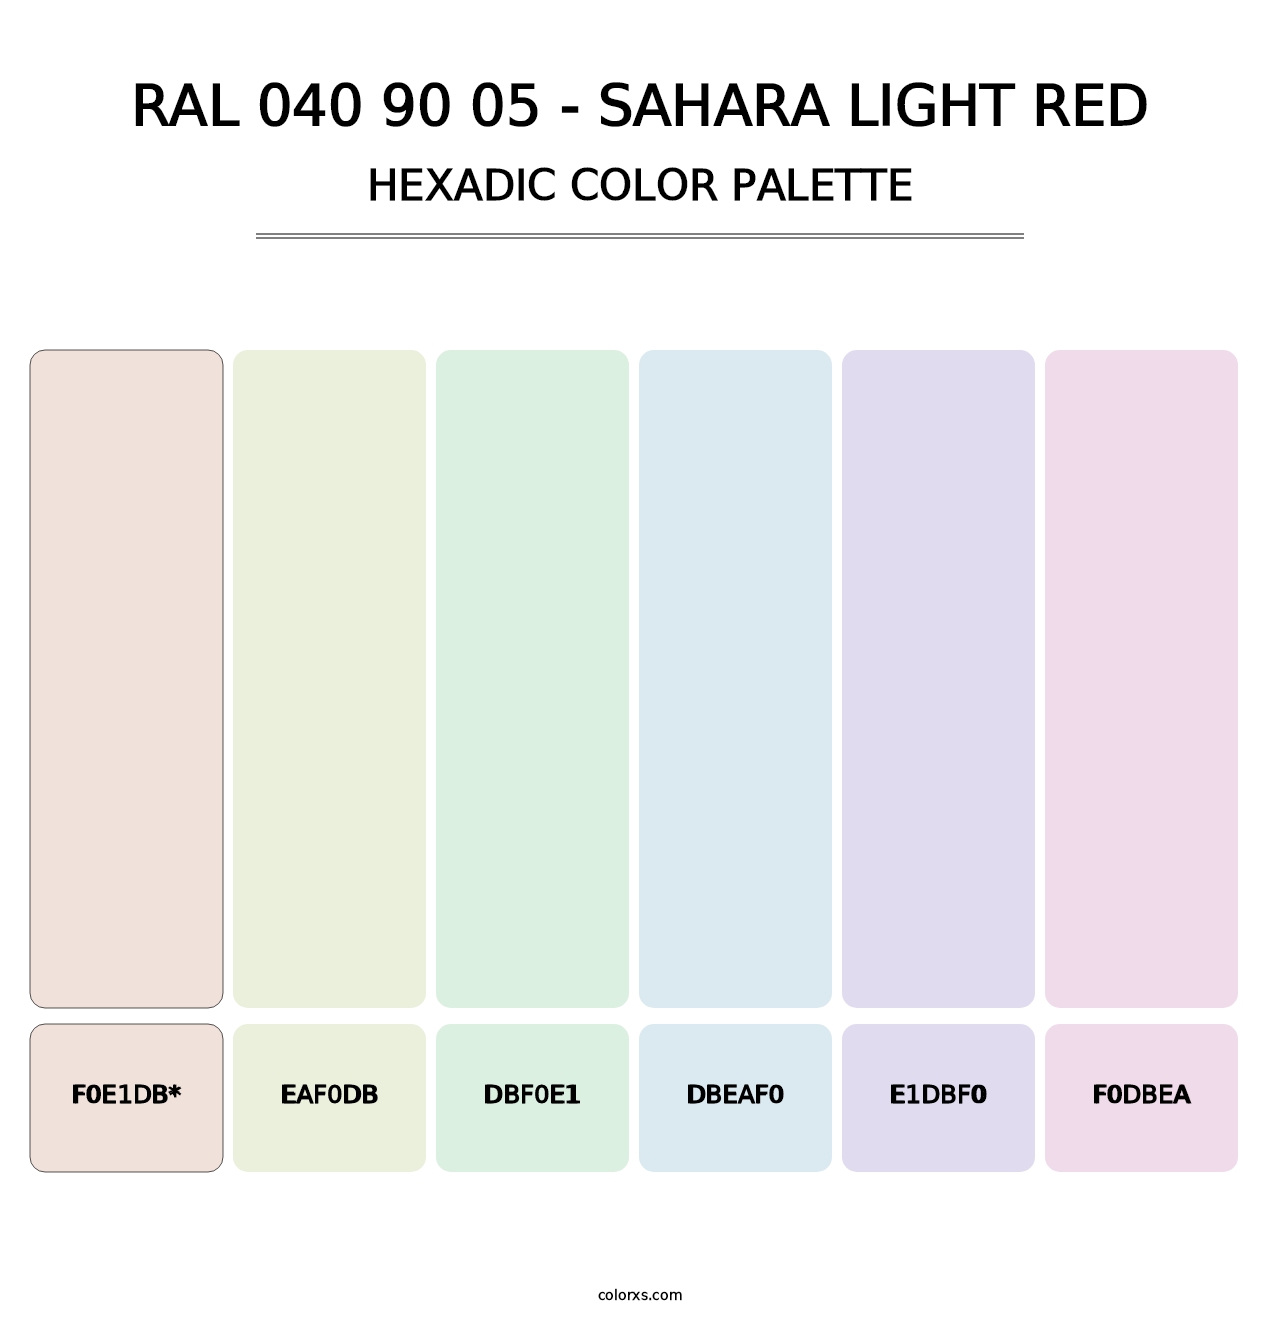 RAL 040 90 05 - Sahara Light Red - Hexadic Color Palette